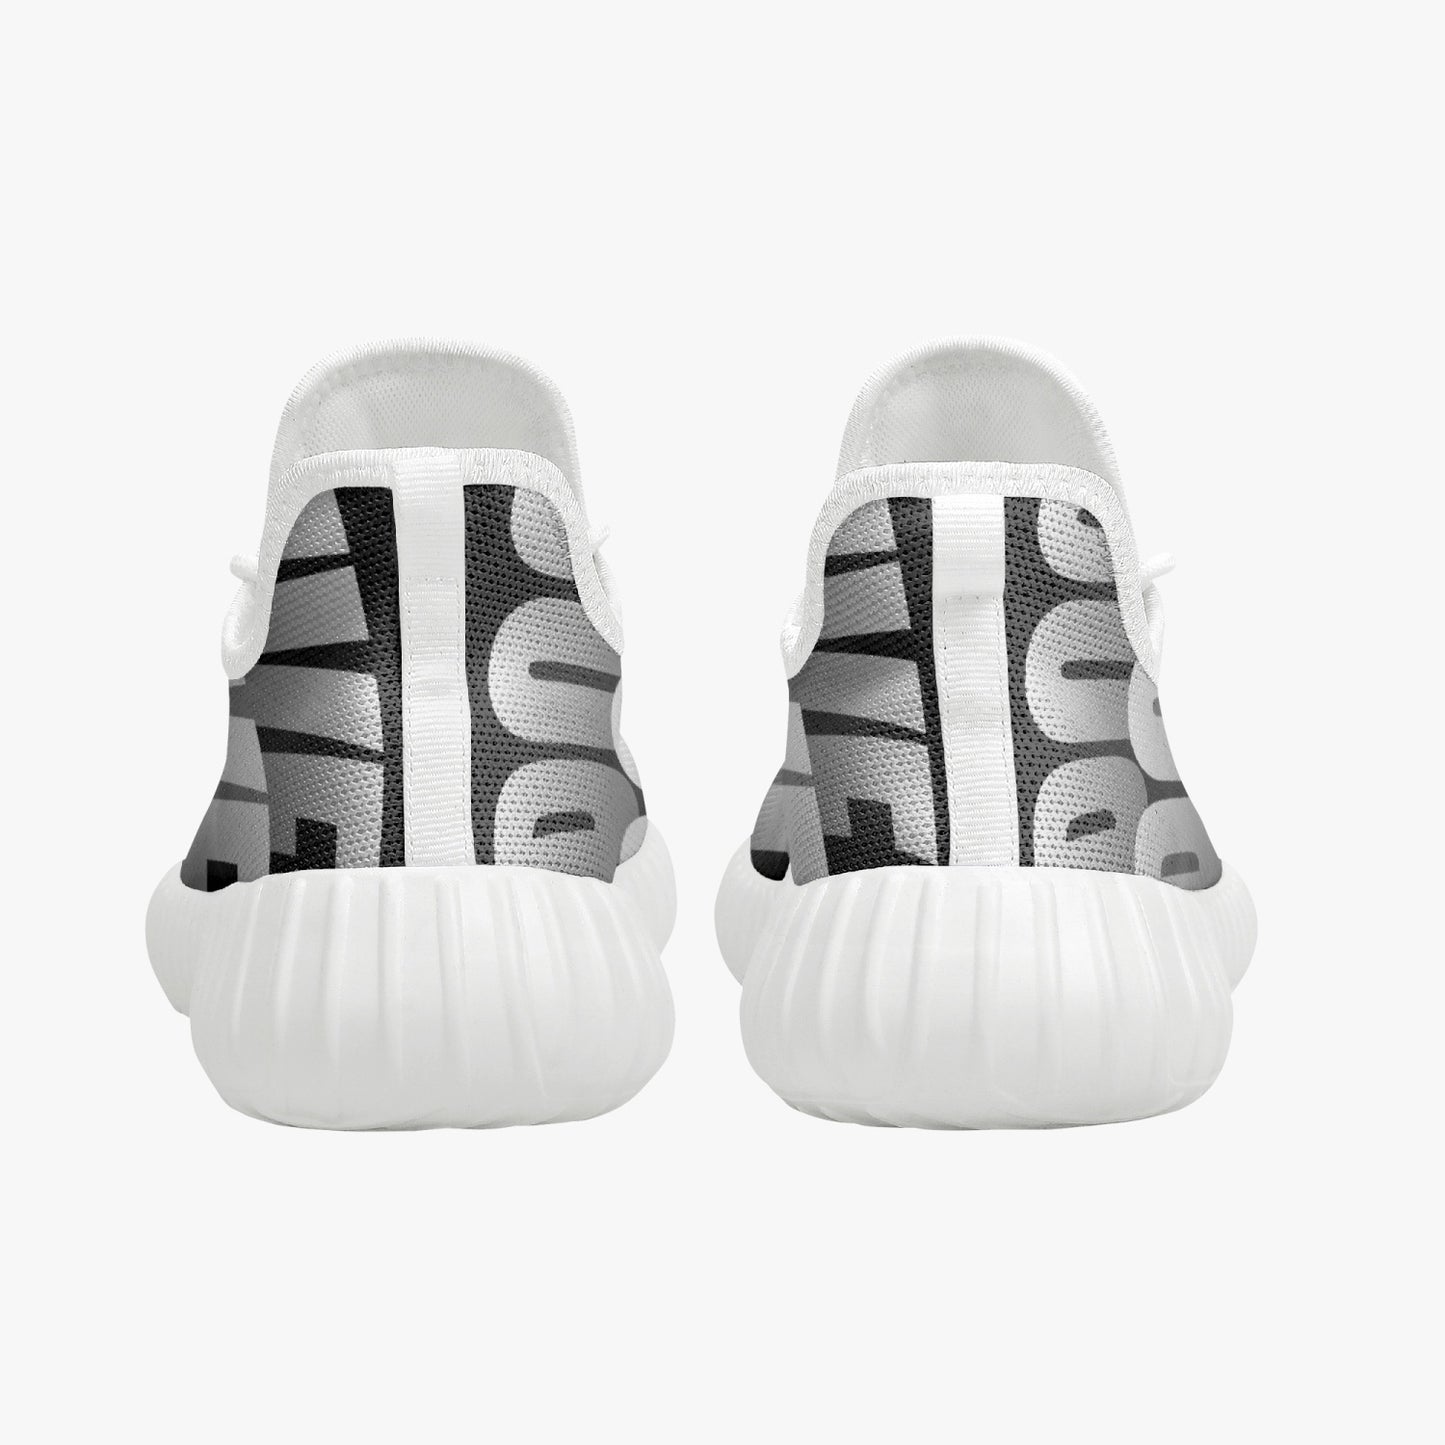 Gen "G" Mesh Knit Sneakers - White/Black